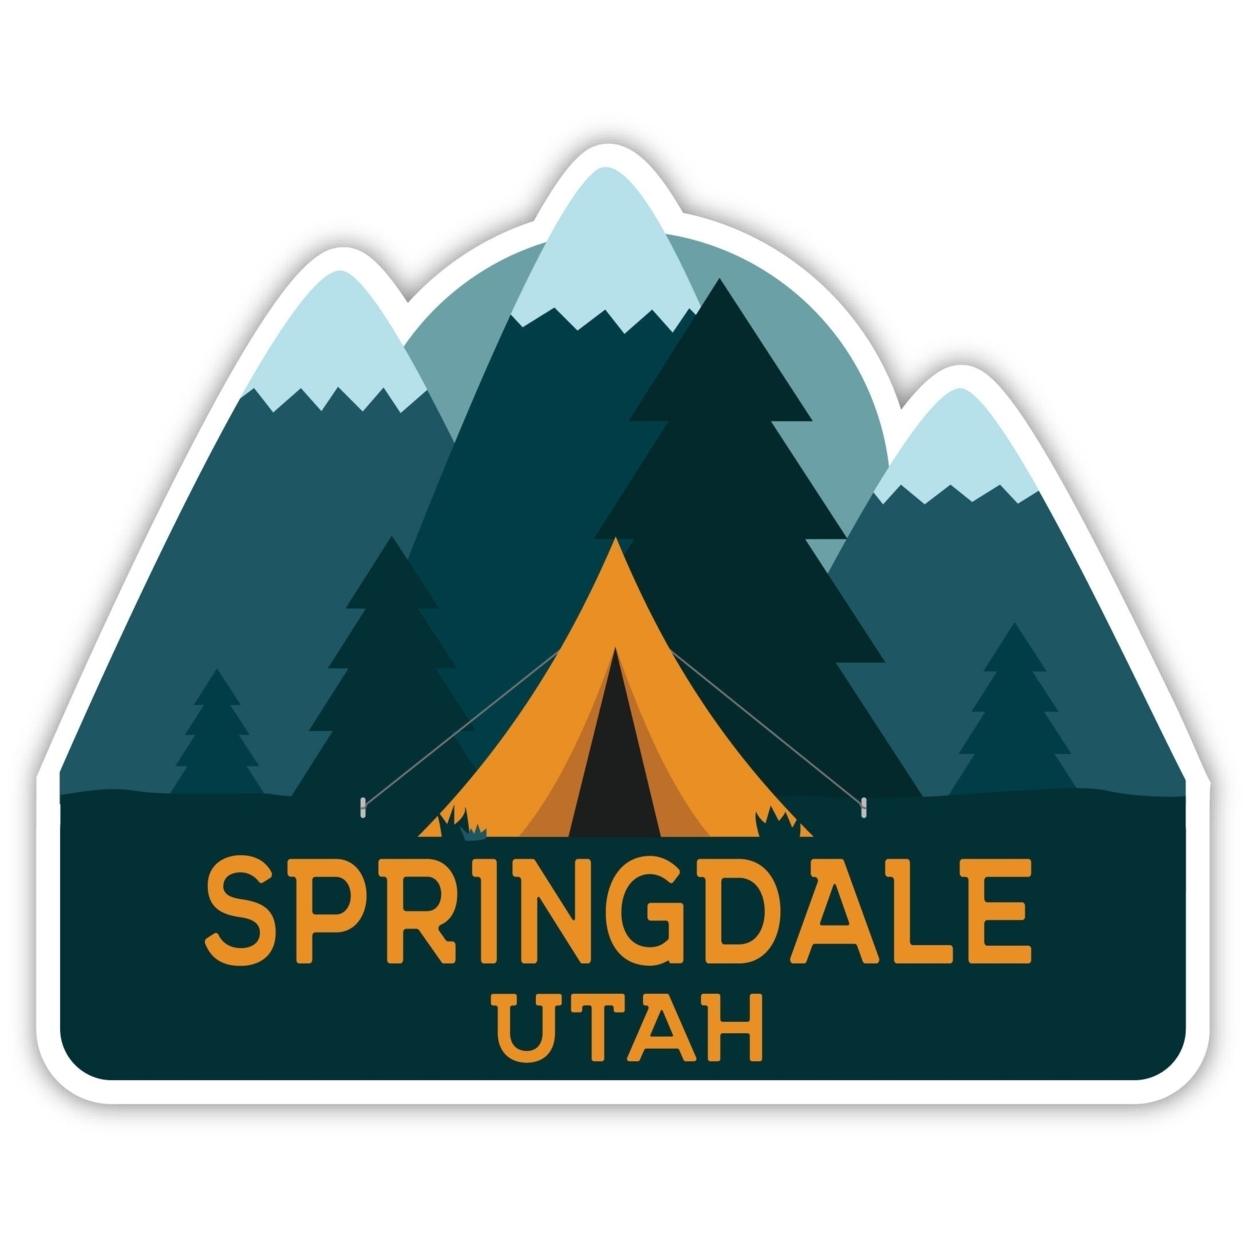 Springdale Utah Souvenir Decorative Stickers (Choose Theme And Size) - Single Unit, 2-Inch, Tent